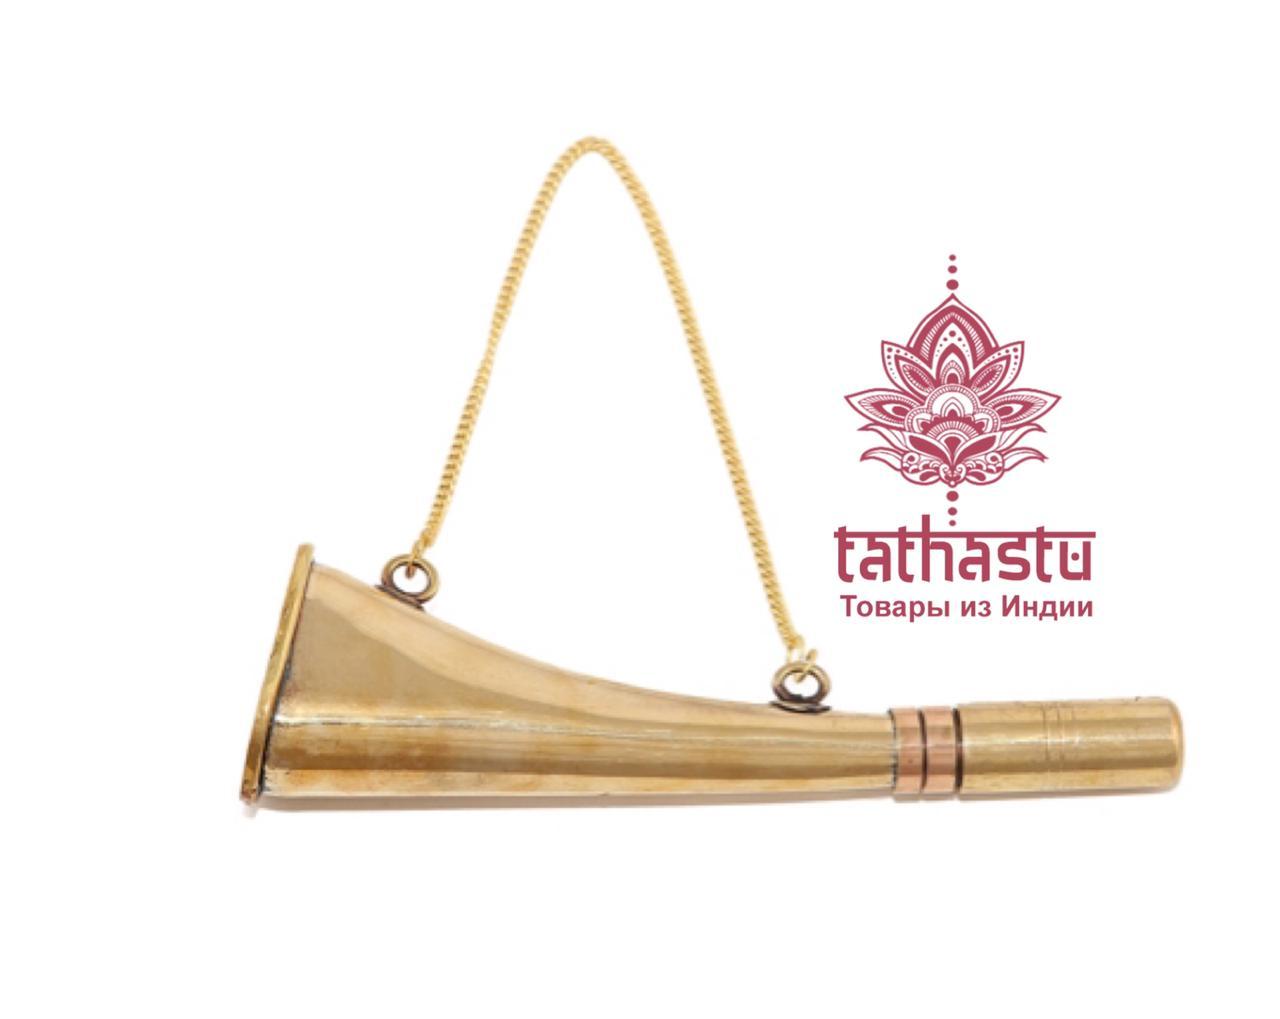 Tathastu музыкальный инструмент. Tathastu товары и индии